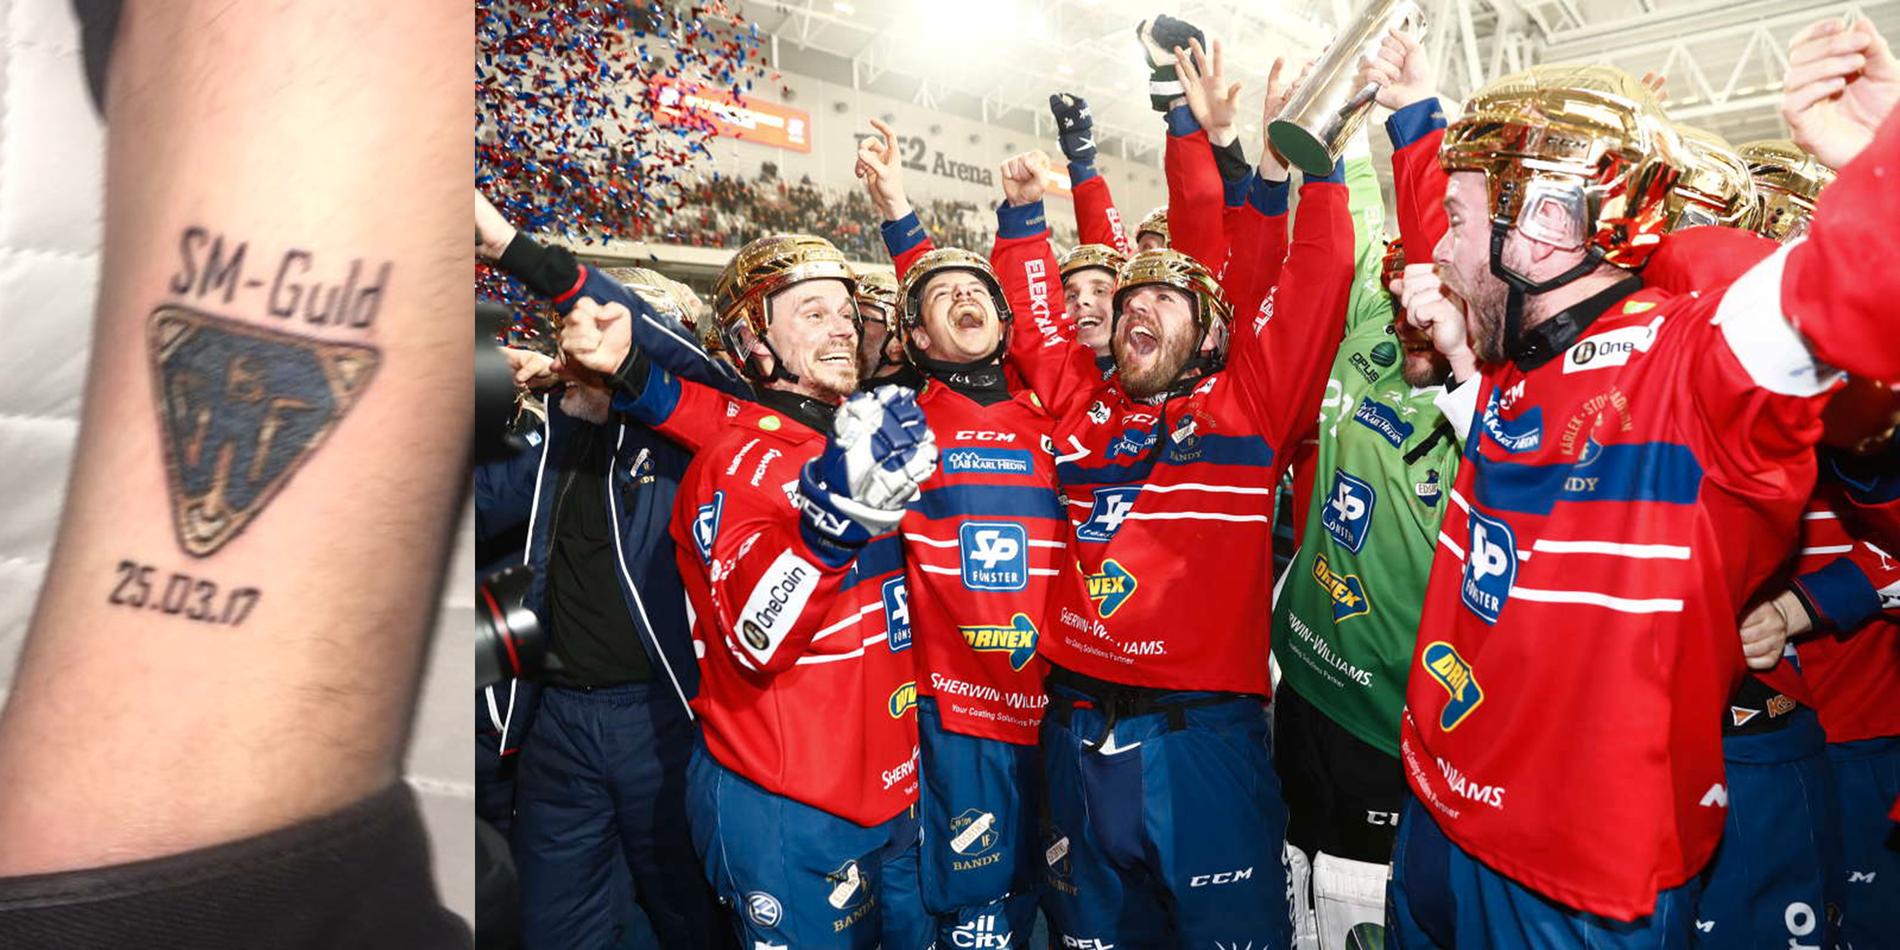 Det var dagen Bollnäs skulle vinna SM-guld, trodde Tobias Magnusson.